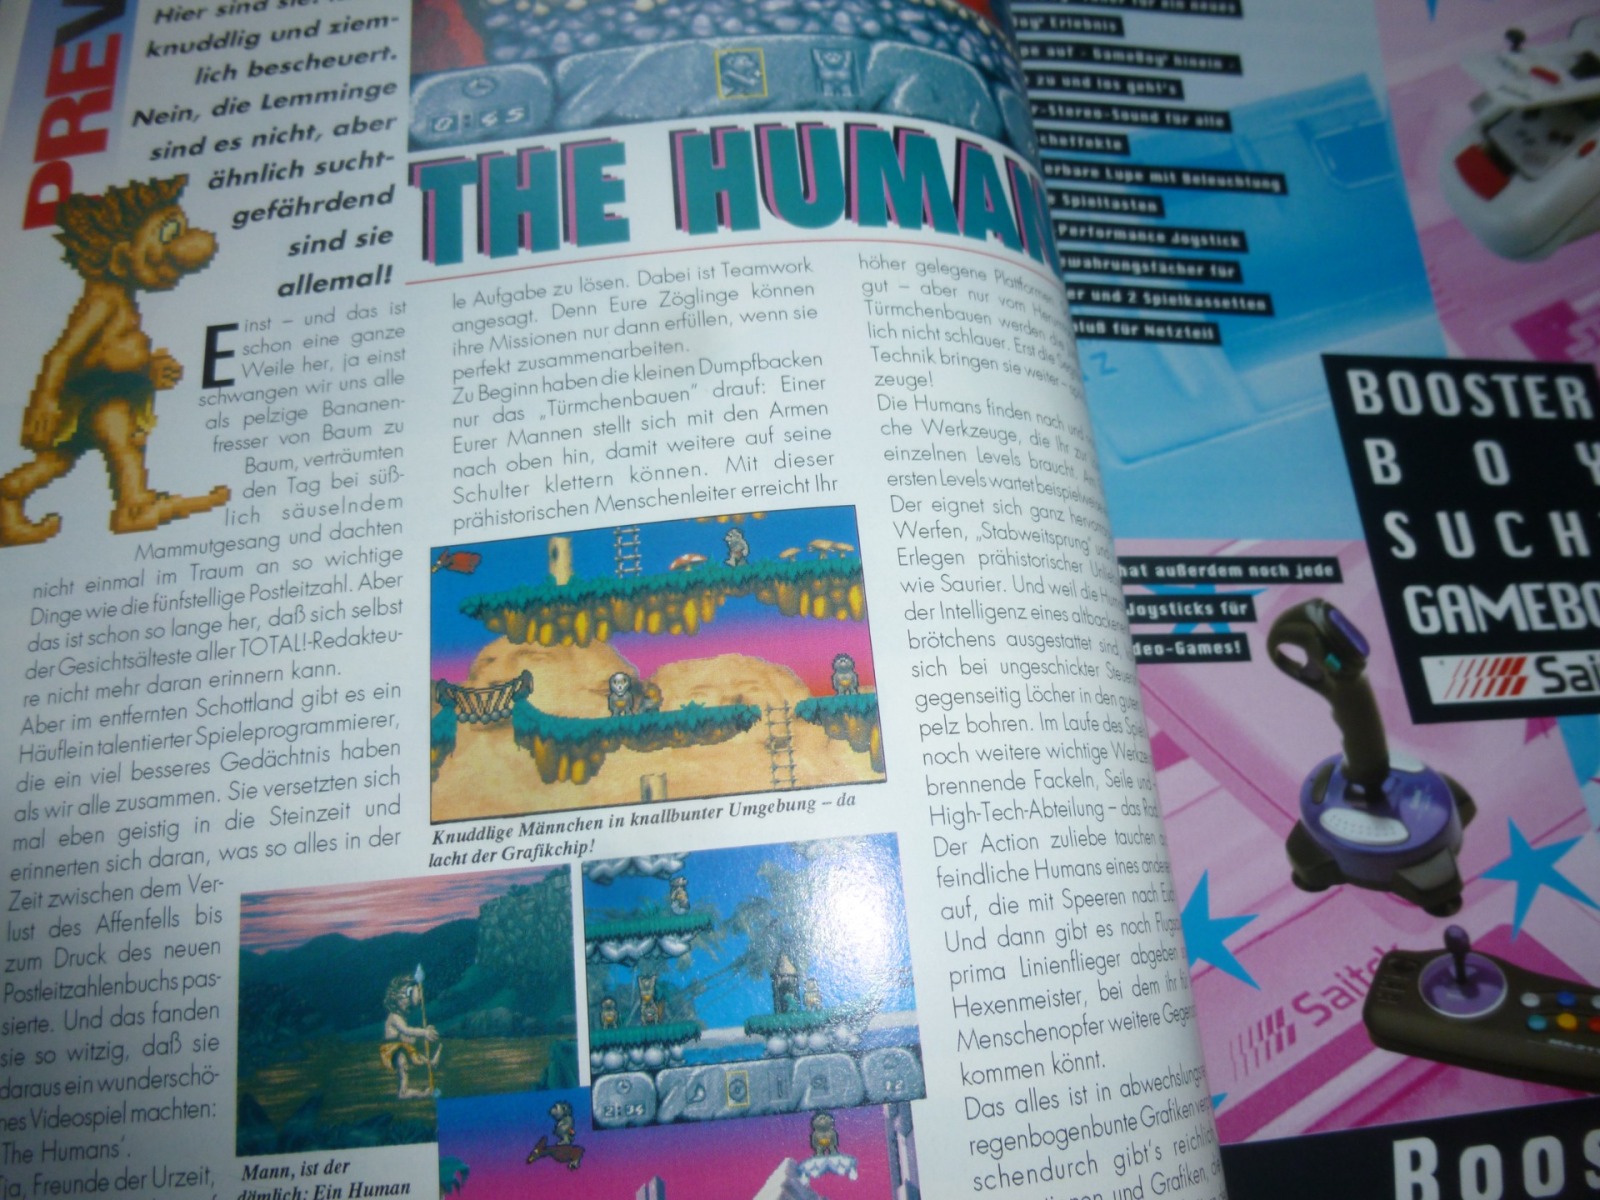 TOTAL Das unabhängige Magazin - 100% Nintendo - Ausgabe 12/93 1993 4